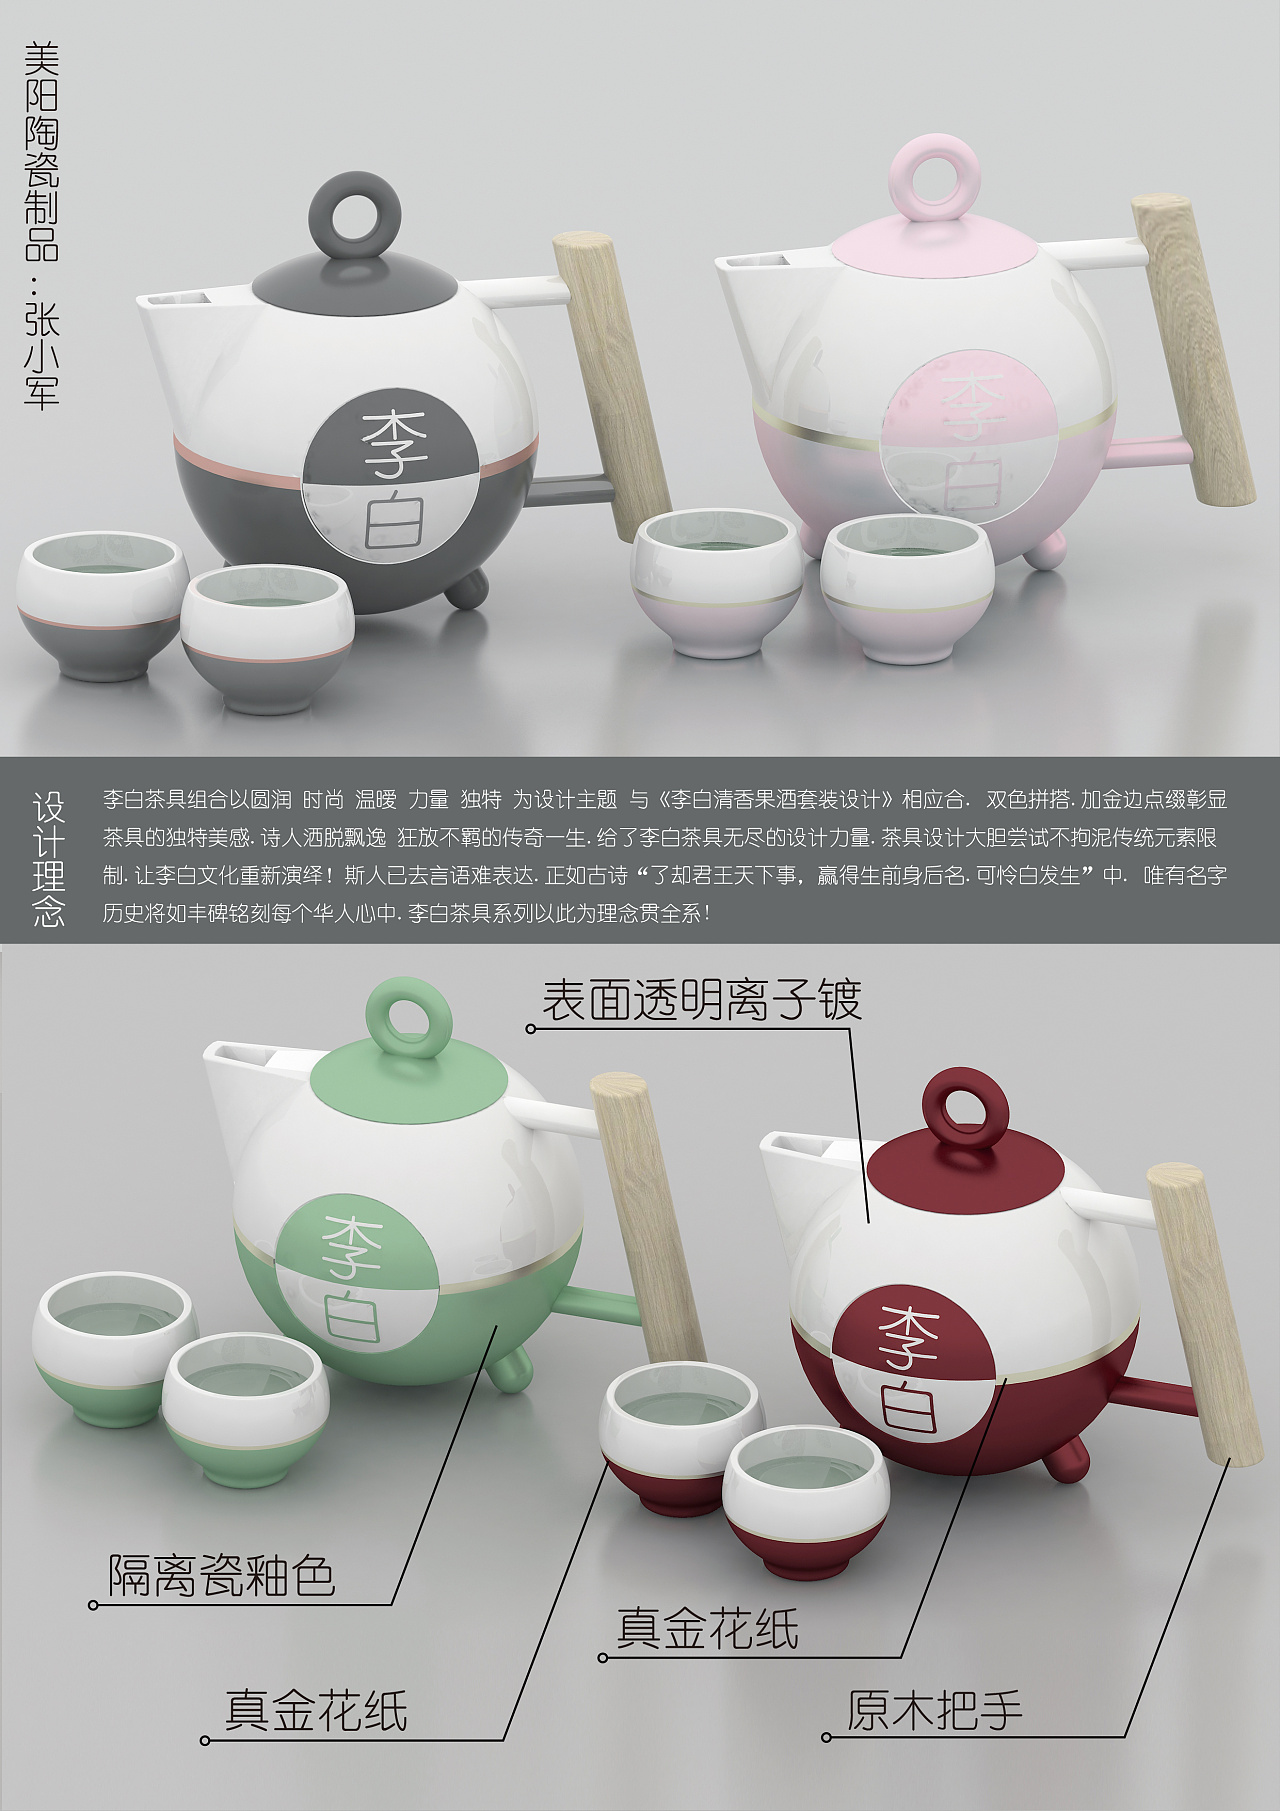 陶瓷设计/陶瓷餐具/陶瓷茶具设计 - 普象网